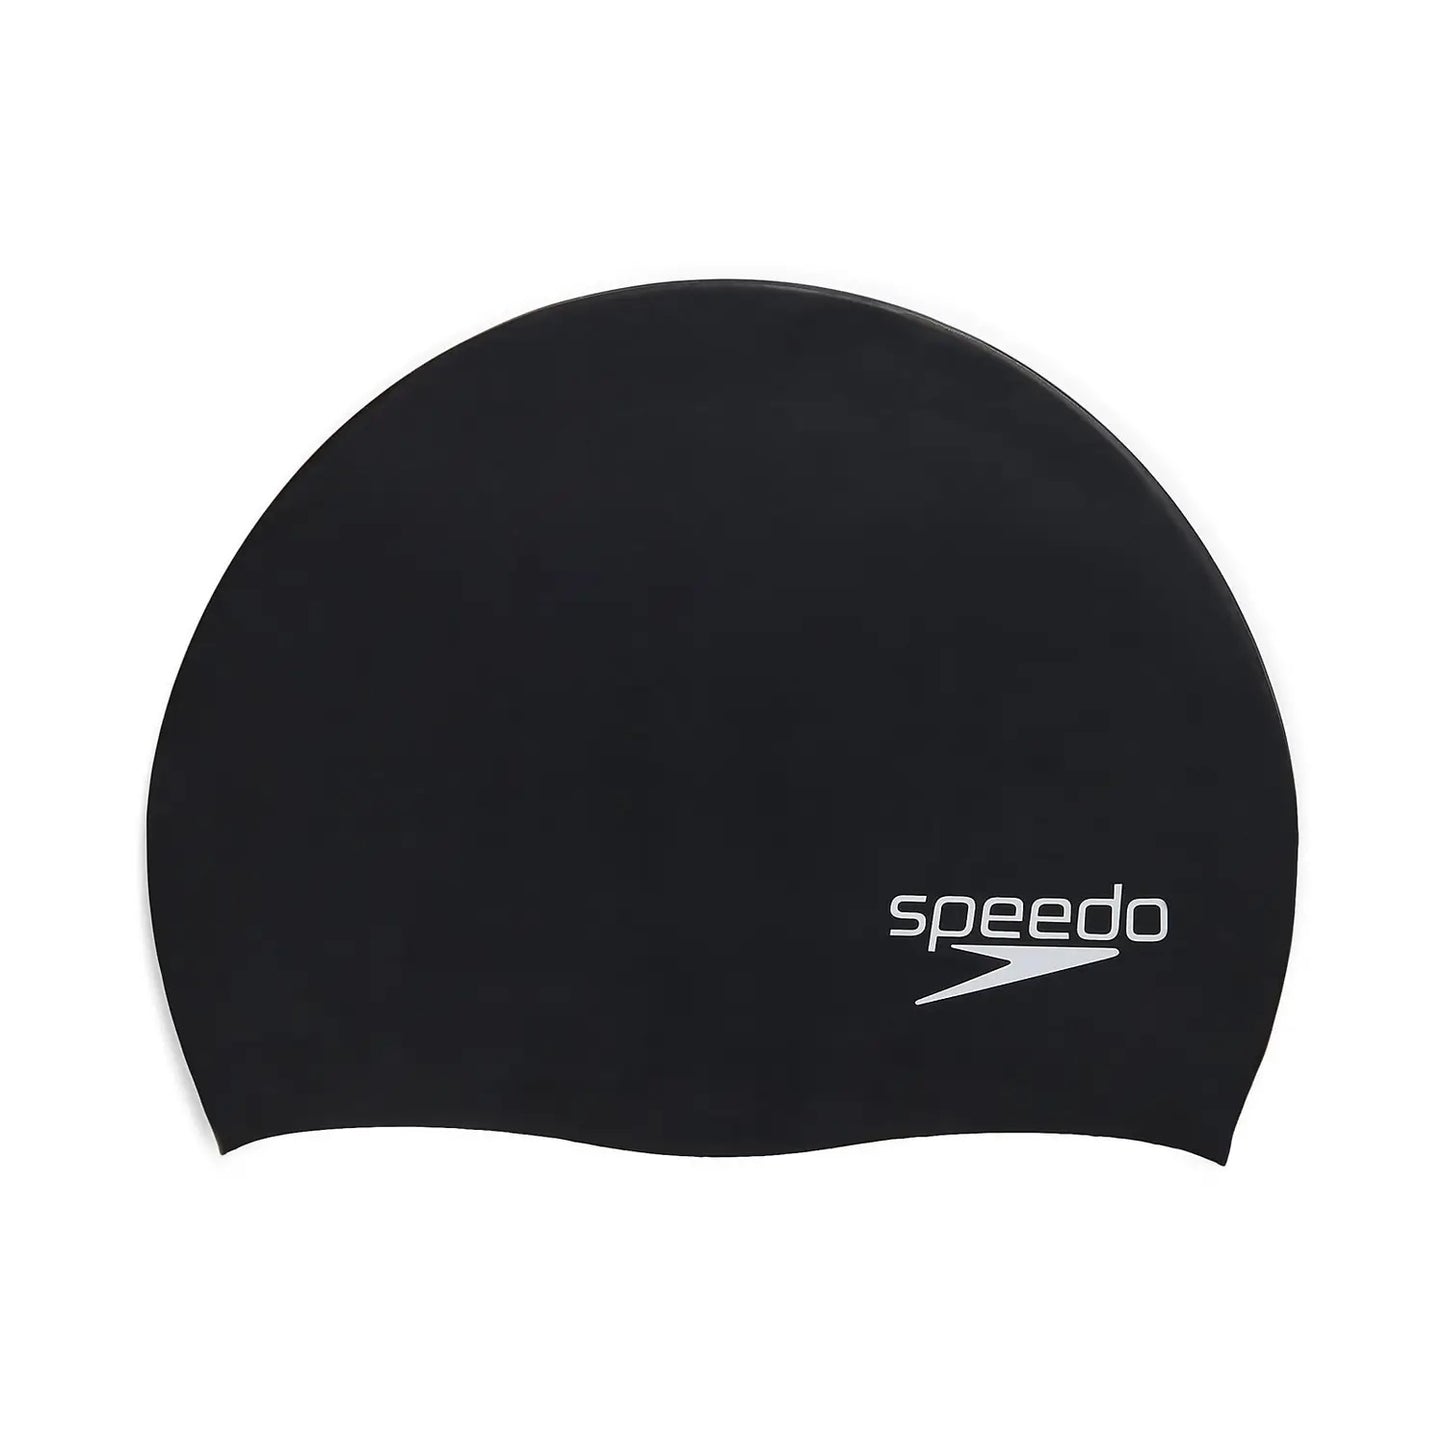 Speedo Black Elastomeric Silicone Swim Cap